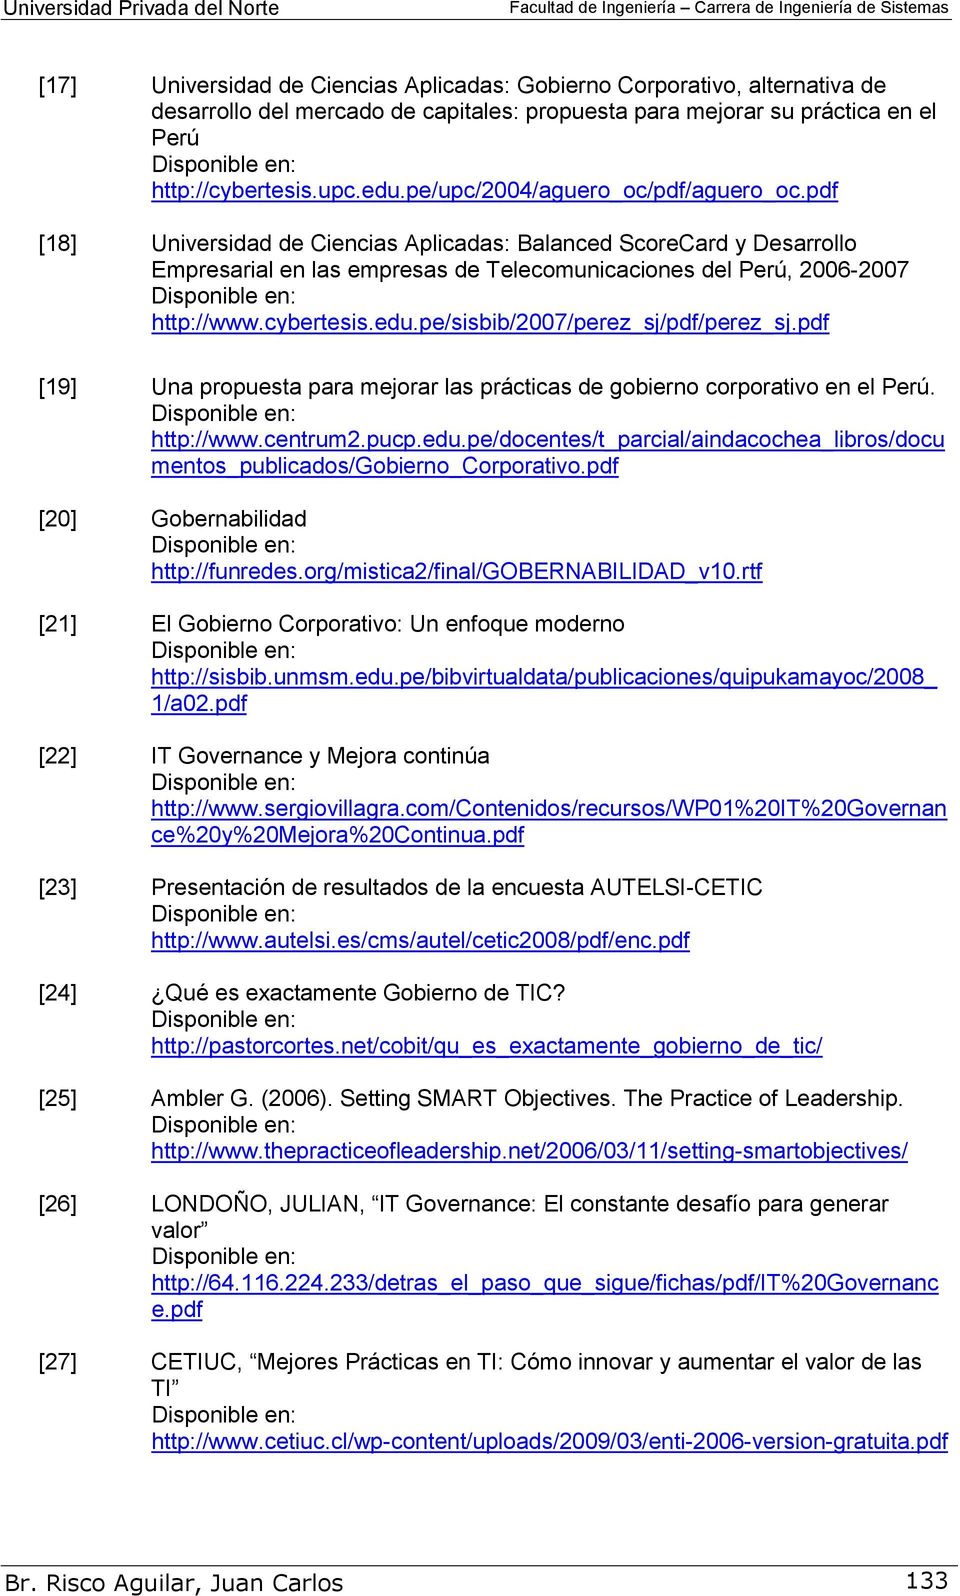 cybertesis.edu.pe/sisbib/2007/perez_sj/pdf/perez_sj.pdf [19] Una propuesta para mejorar las prácticas de gobierno corporativo en el Perú. http://www.centrum2.pucp.edu.pe/docentes/t_parcial/aindacochea_libros/docu mentos_publicados/gobierno_corporativo.